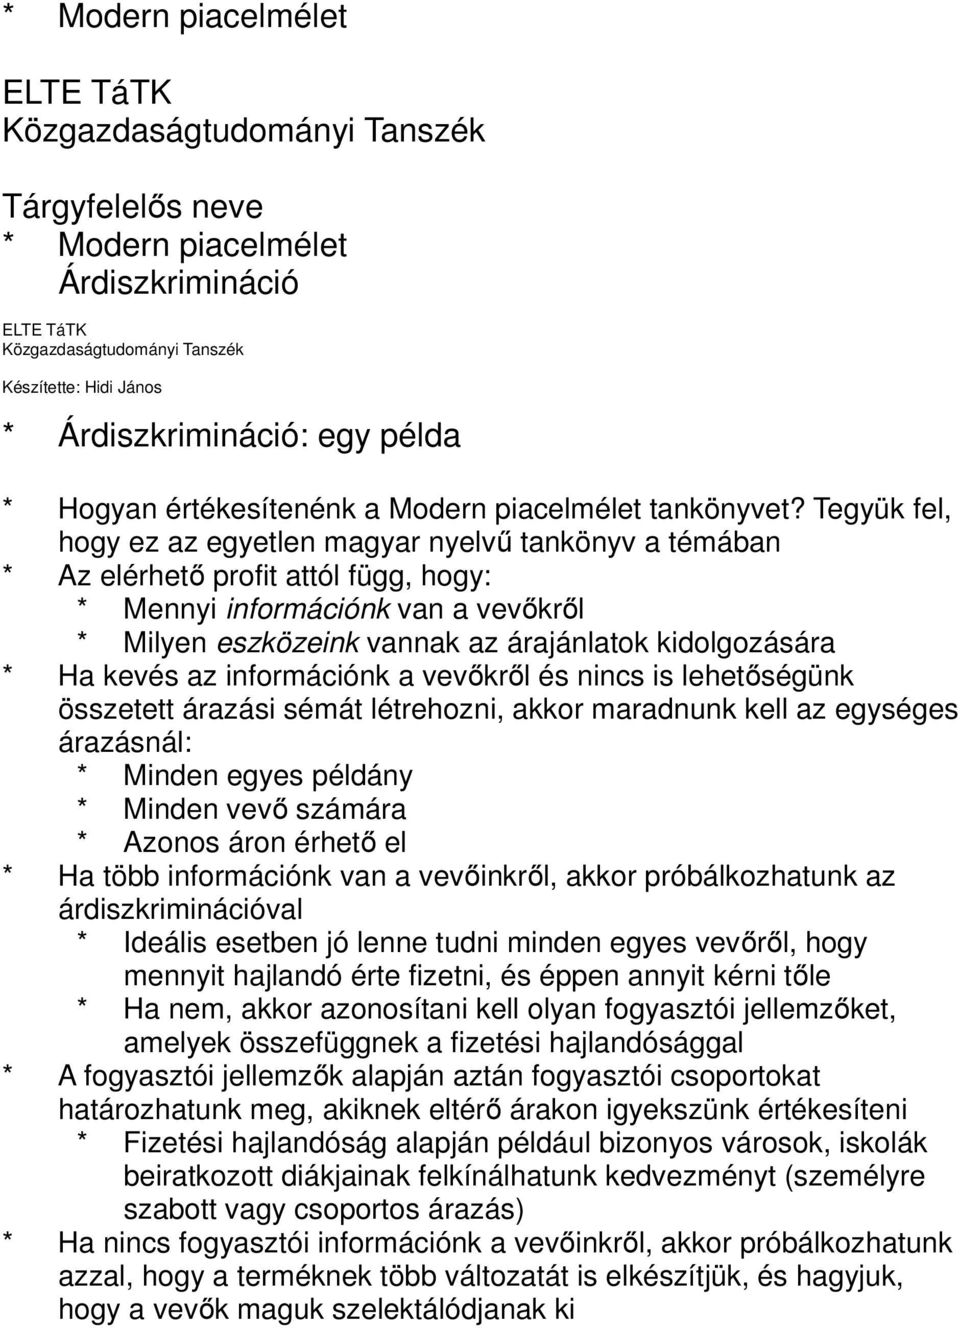 Tegyük fel, hogy ez az egyetlen magyar nyelvű tankönyv a témában * Az elérhető profit attól függ, hogy: * Mennyi információnk van a vevőkről * Milyen eszközeink vannak az árajánlatok kidolgozására *